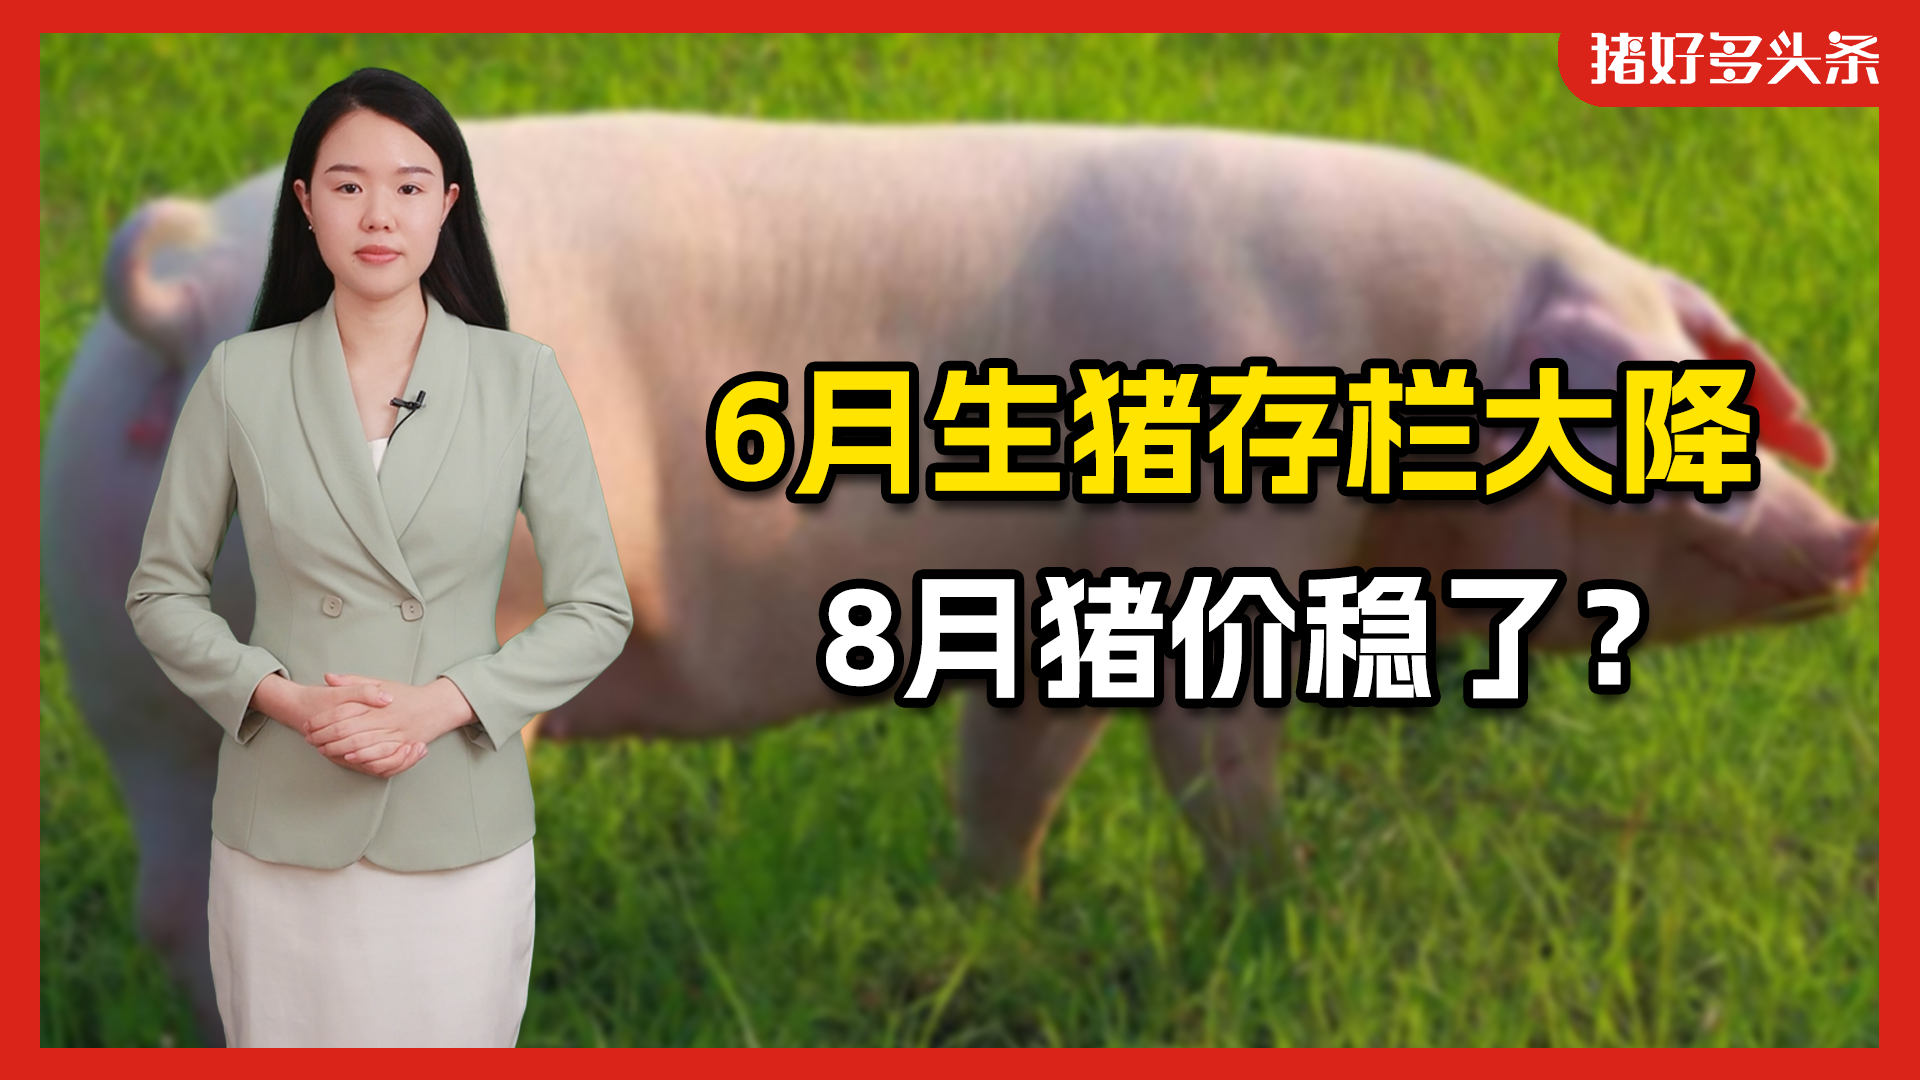 6月中大猪存栏下降，肥猪价格上行！8月或再现猪价高峰！